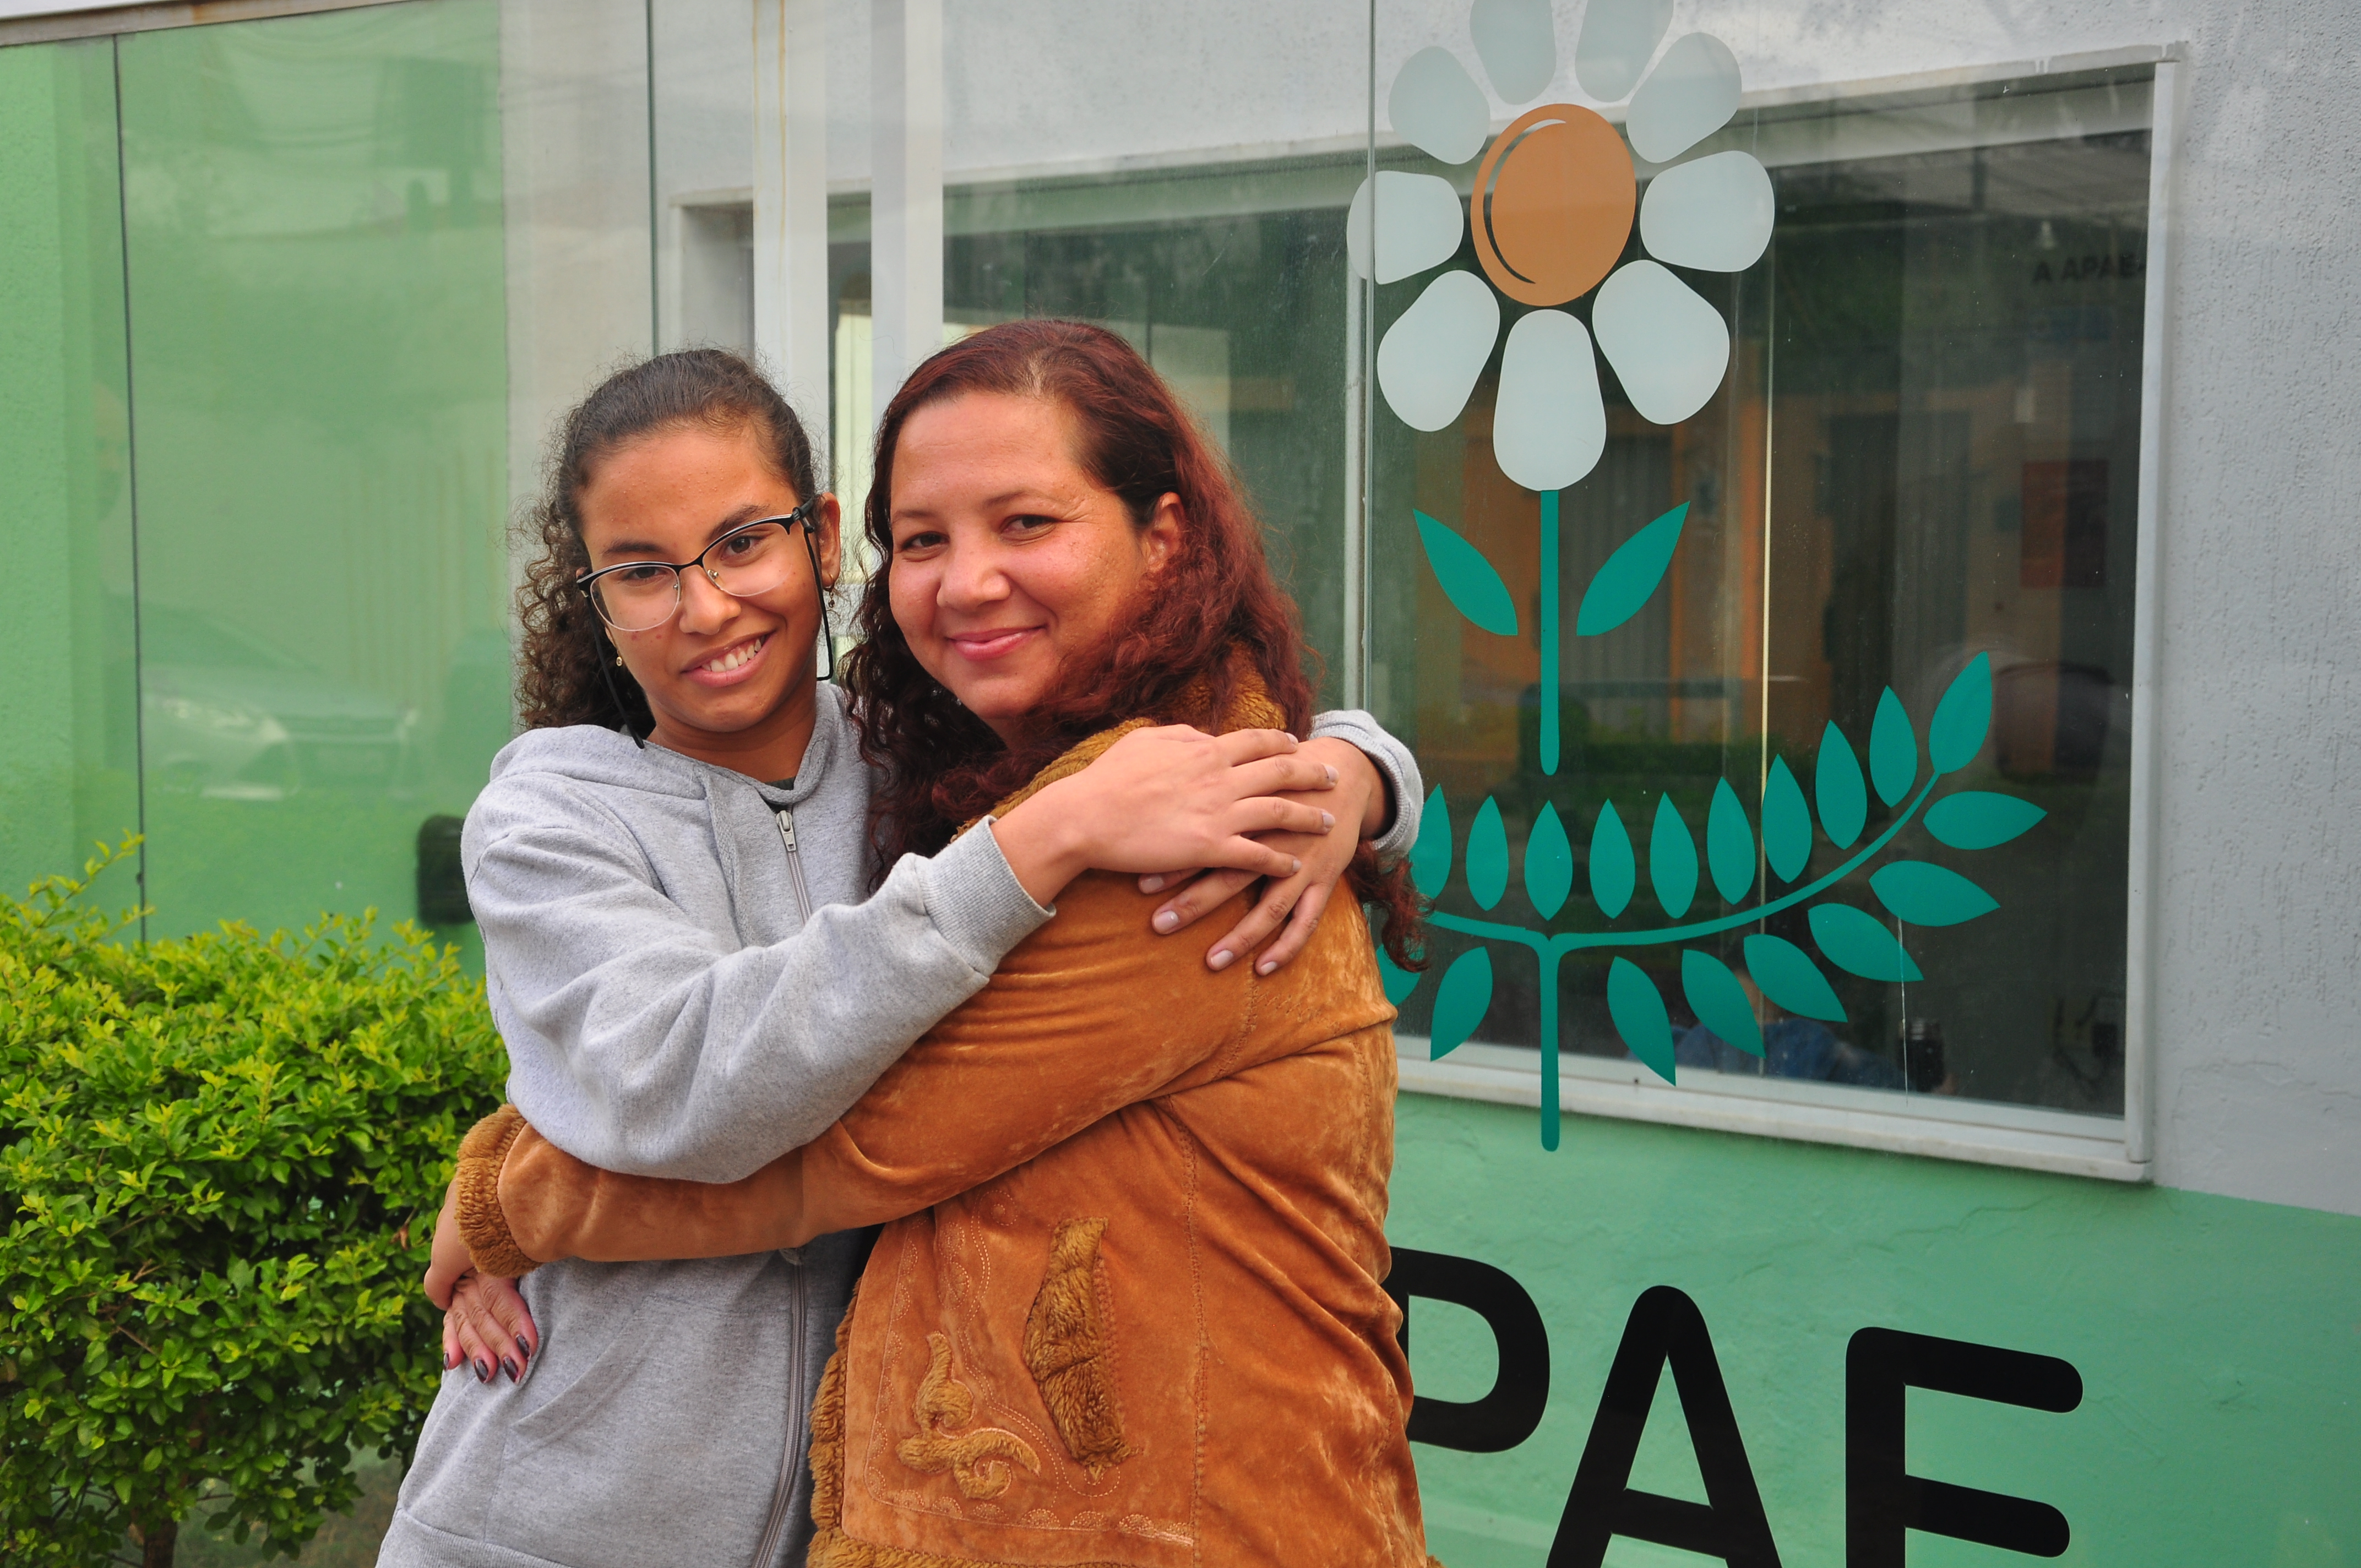 Maria Vitória e a mãe, Gilmara Junia Campos posadas uma ao lado da outra para uma foto em frente à fachada da APAE, clínica onde Maria Vitória tem acompanhamento médico e social. Legenda abaixo: Maria Vitória é acompanhada na APAE BH há 2 anos.